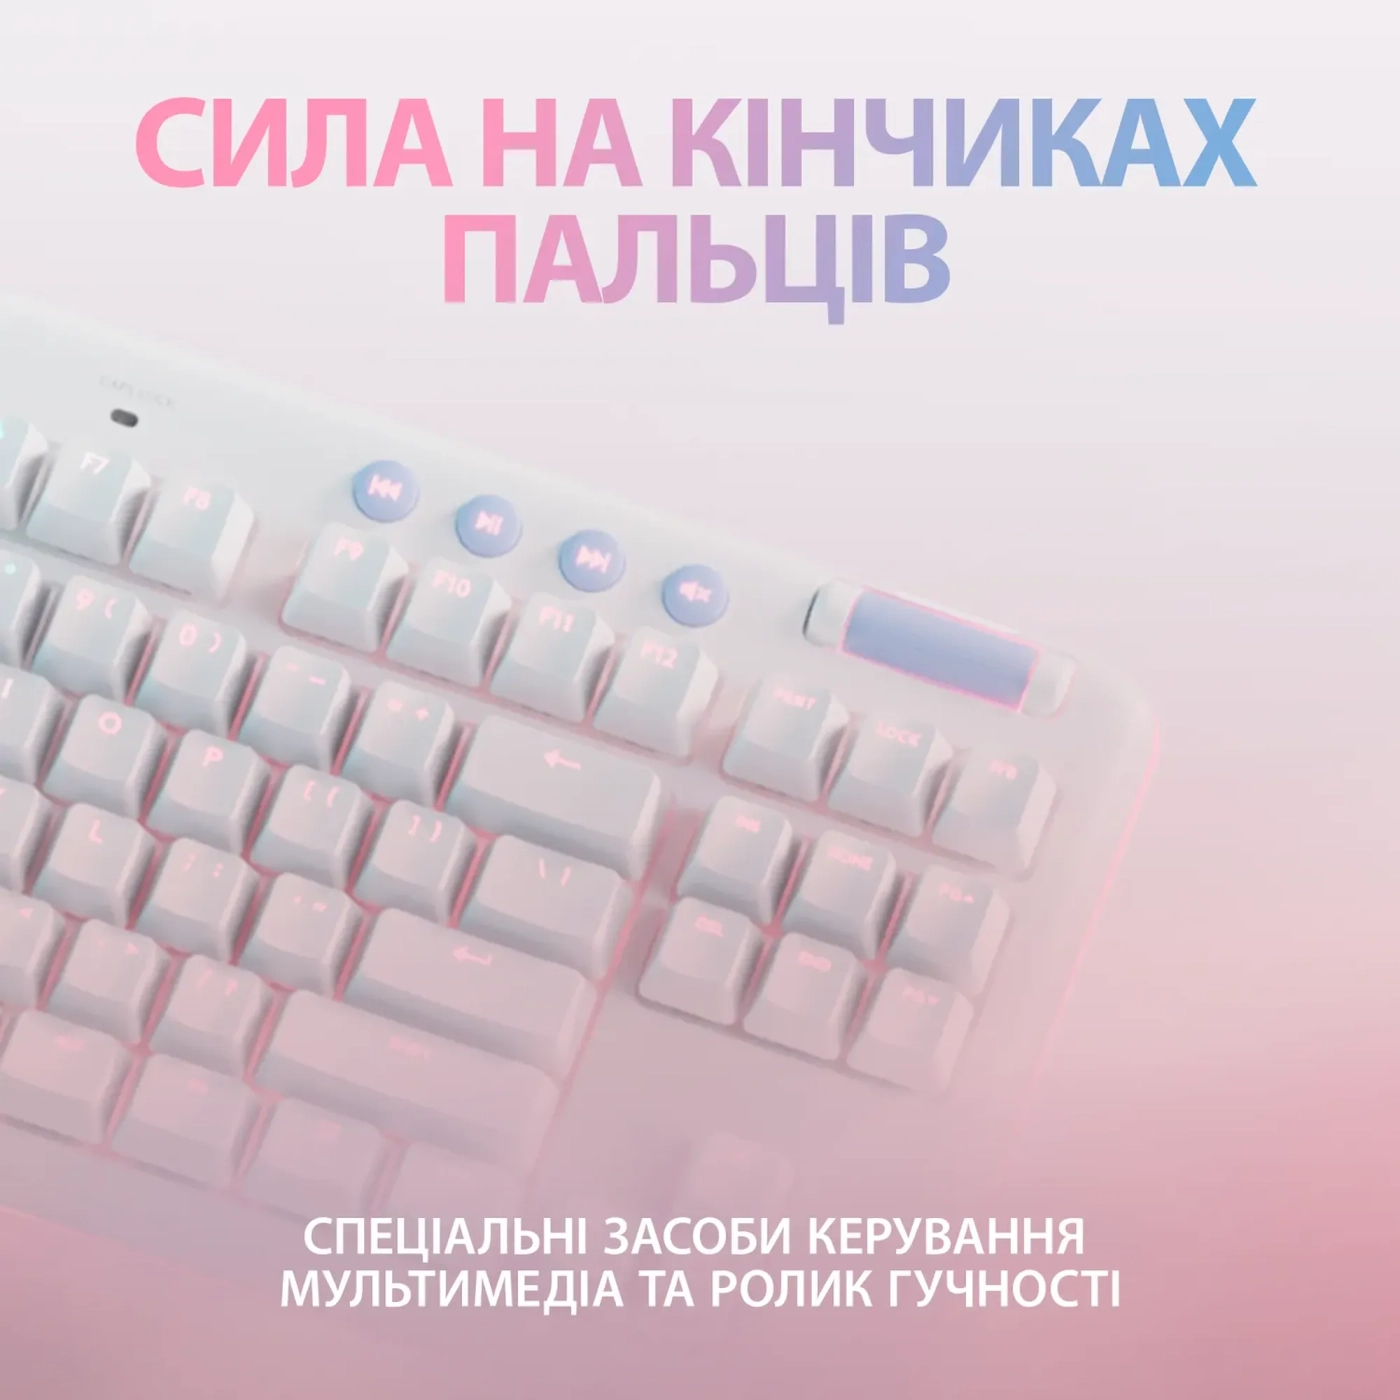 Купить Клавиатура Logitech G715 Gaming Keyboard Off White 2.4GHZ/BT Linear (920-010692) - фото 5